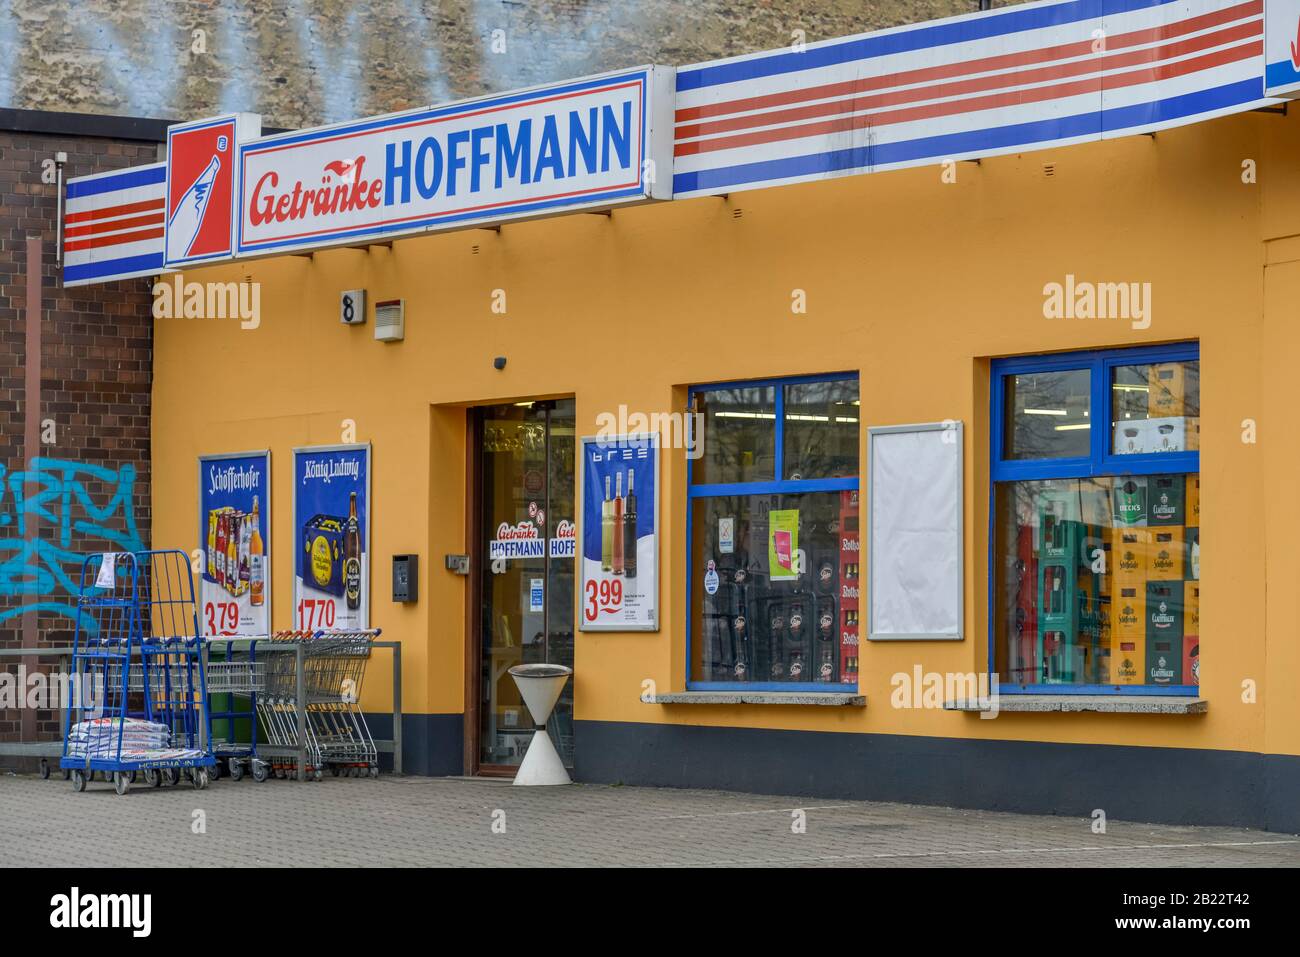 Getränke Hoffmann, Markstraße, Reinickendorf, Berlin, Deutschland Foto Stock